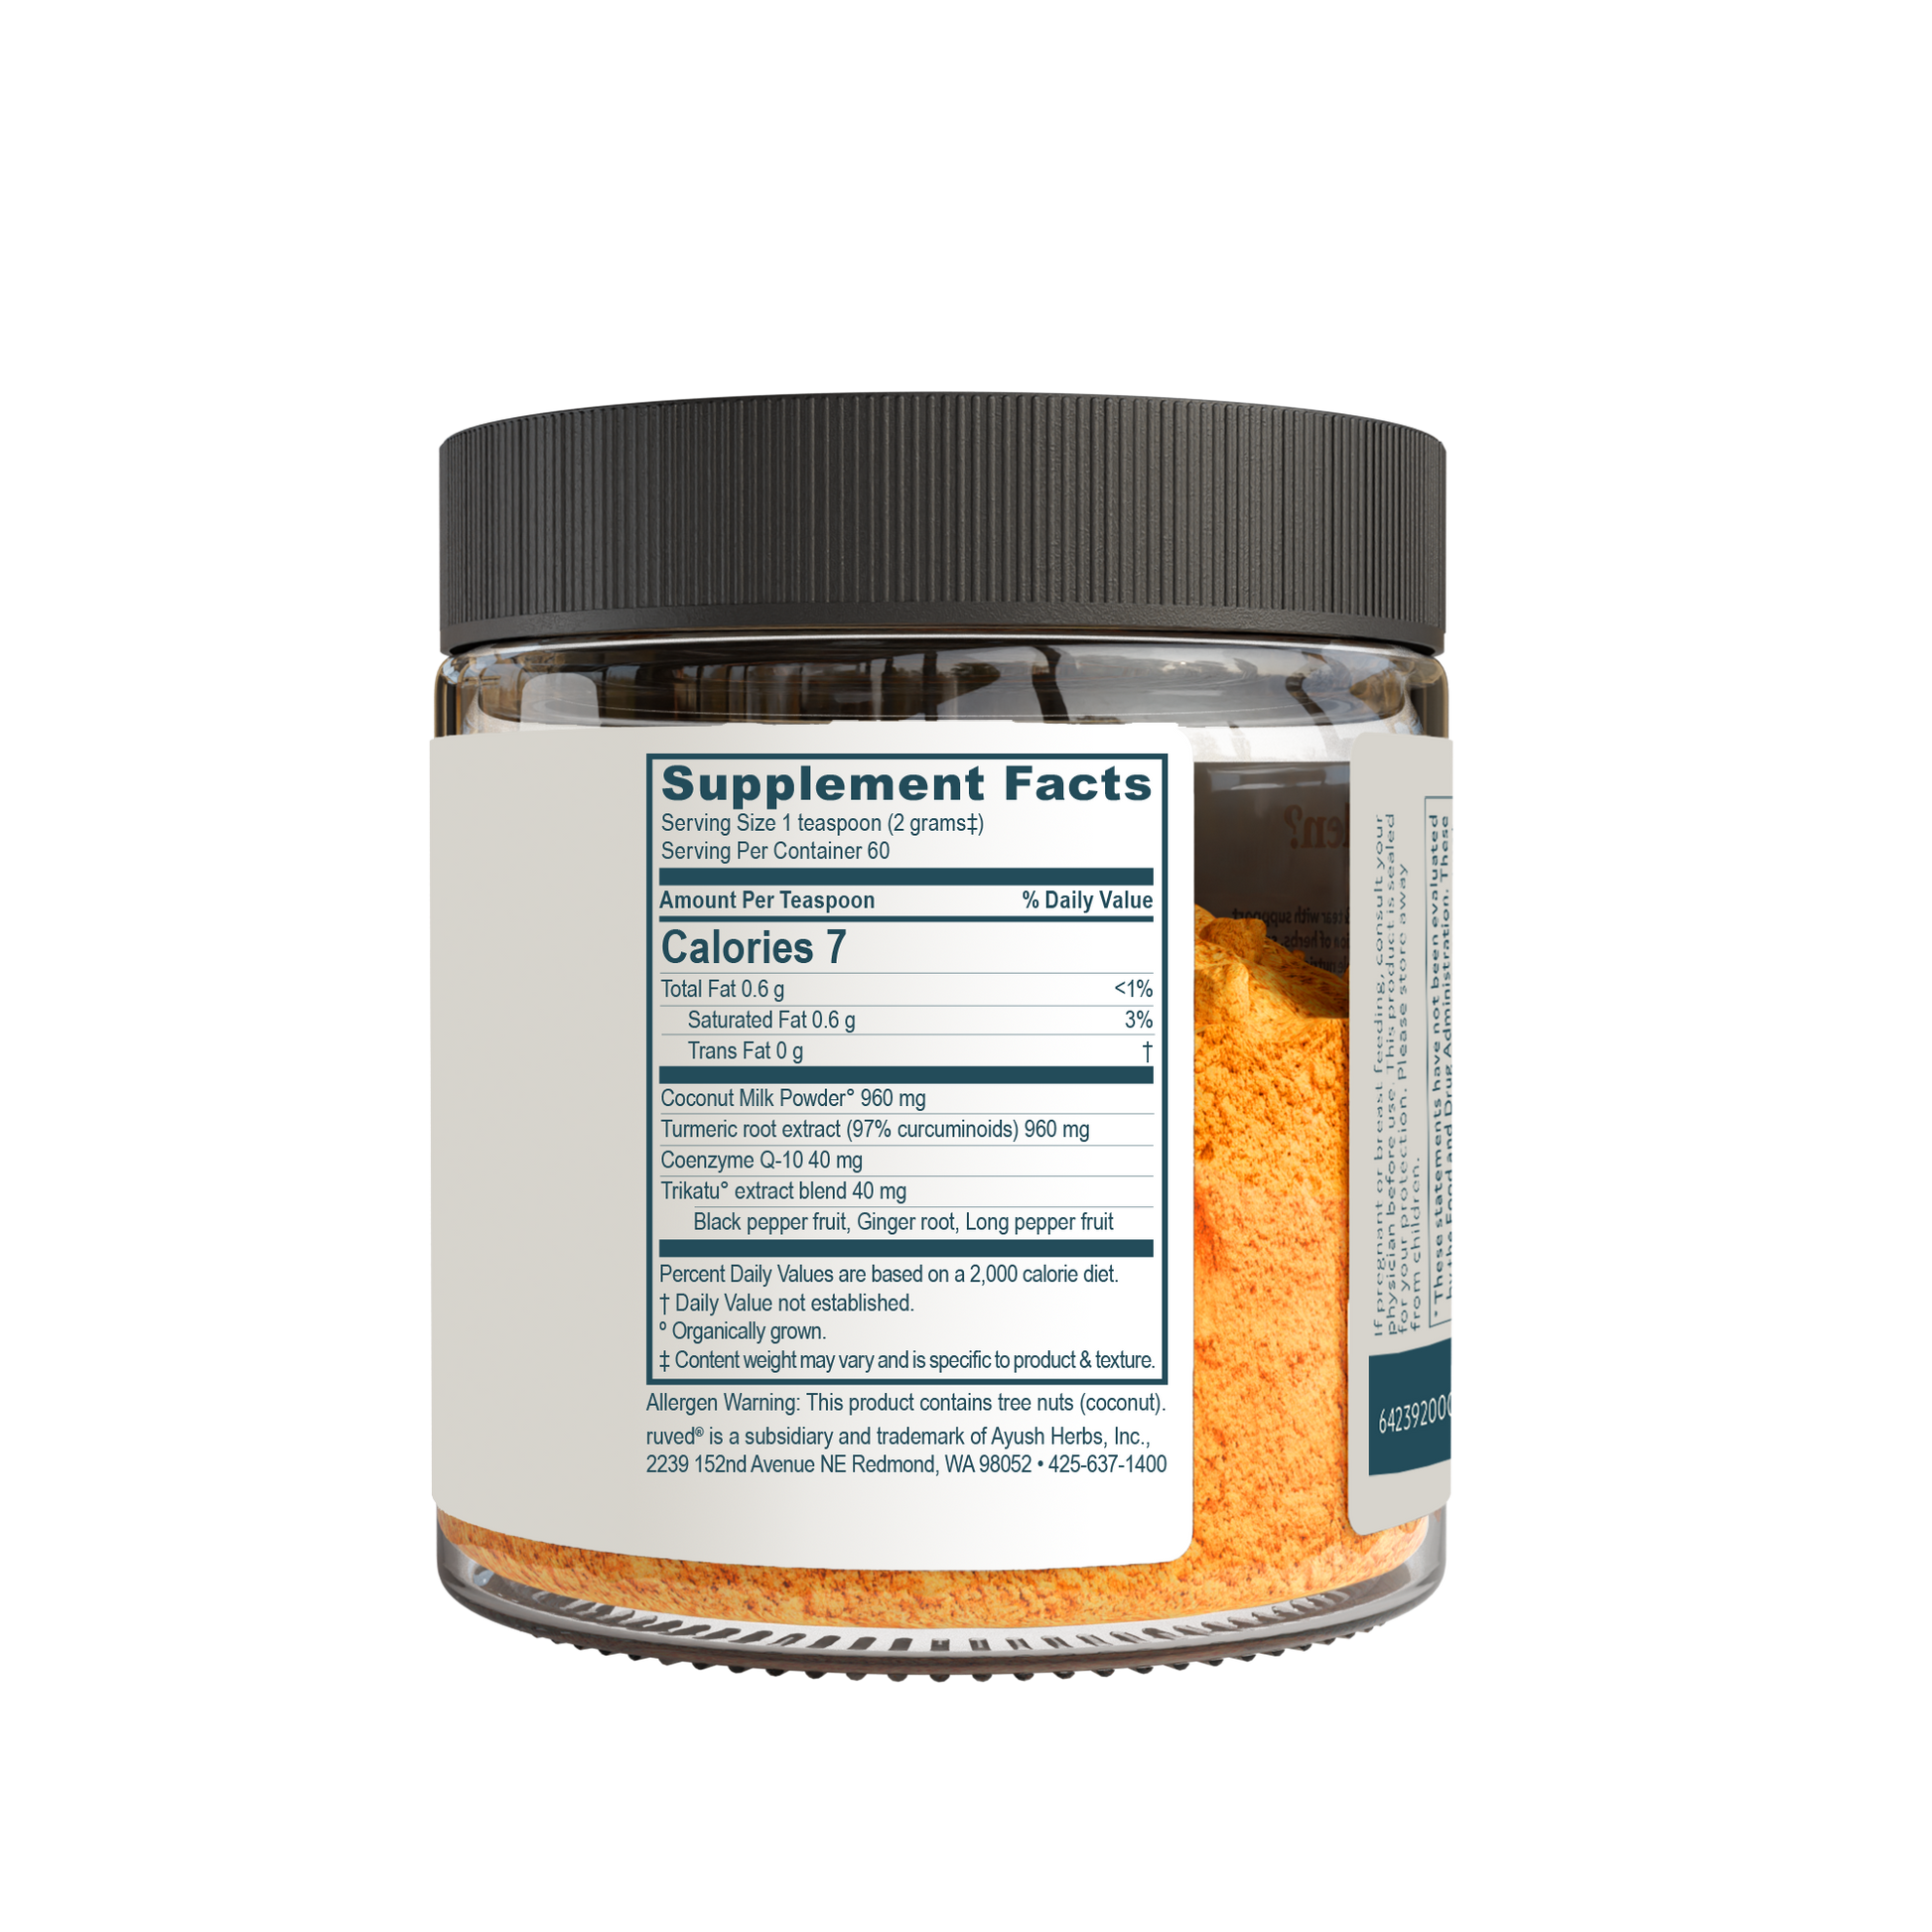 Golden Blend Cocurcumin Powder Supplement Facts Side - Organic Turmeric Curcumin Blend, 120g Glass Jar, Natural Anti-Inflammatory, and Antioxidant Supplement.